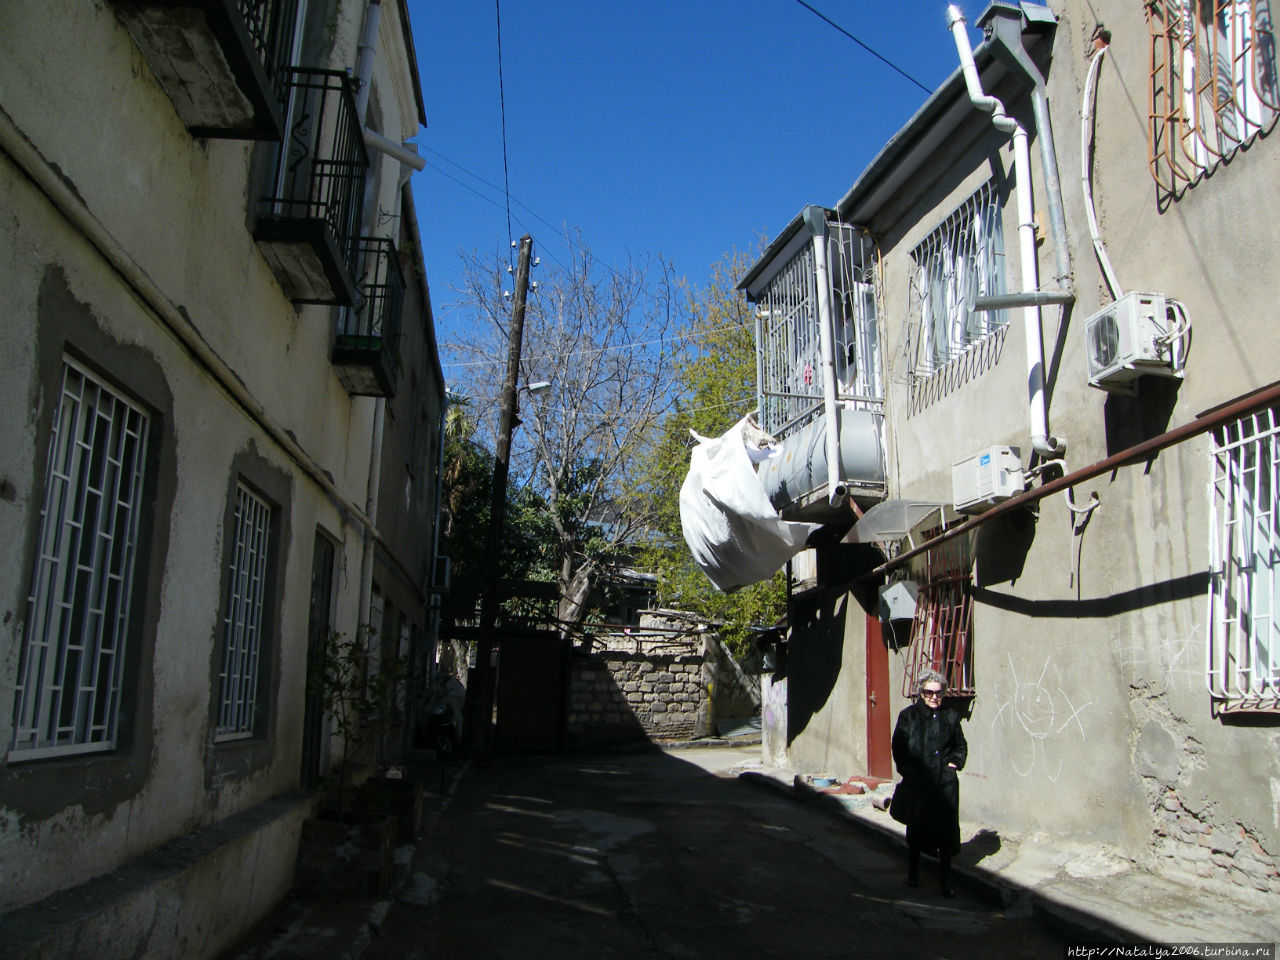 Улочка, бельишко полощется на ветру Тбилиси, Грузия